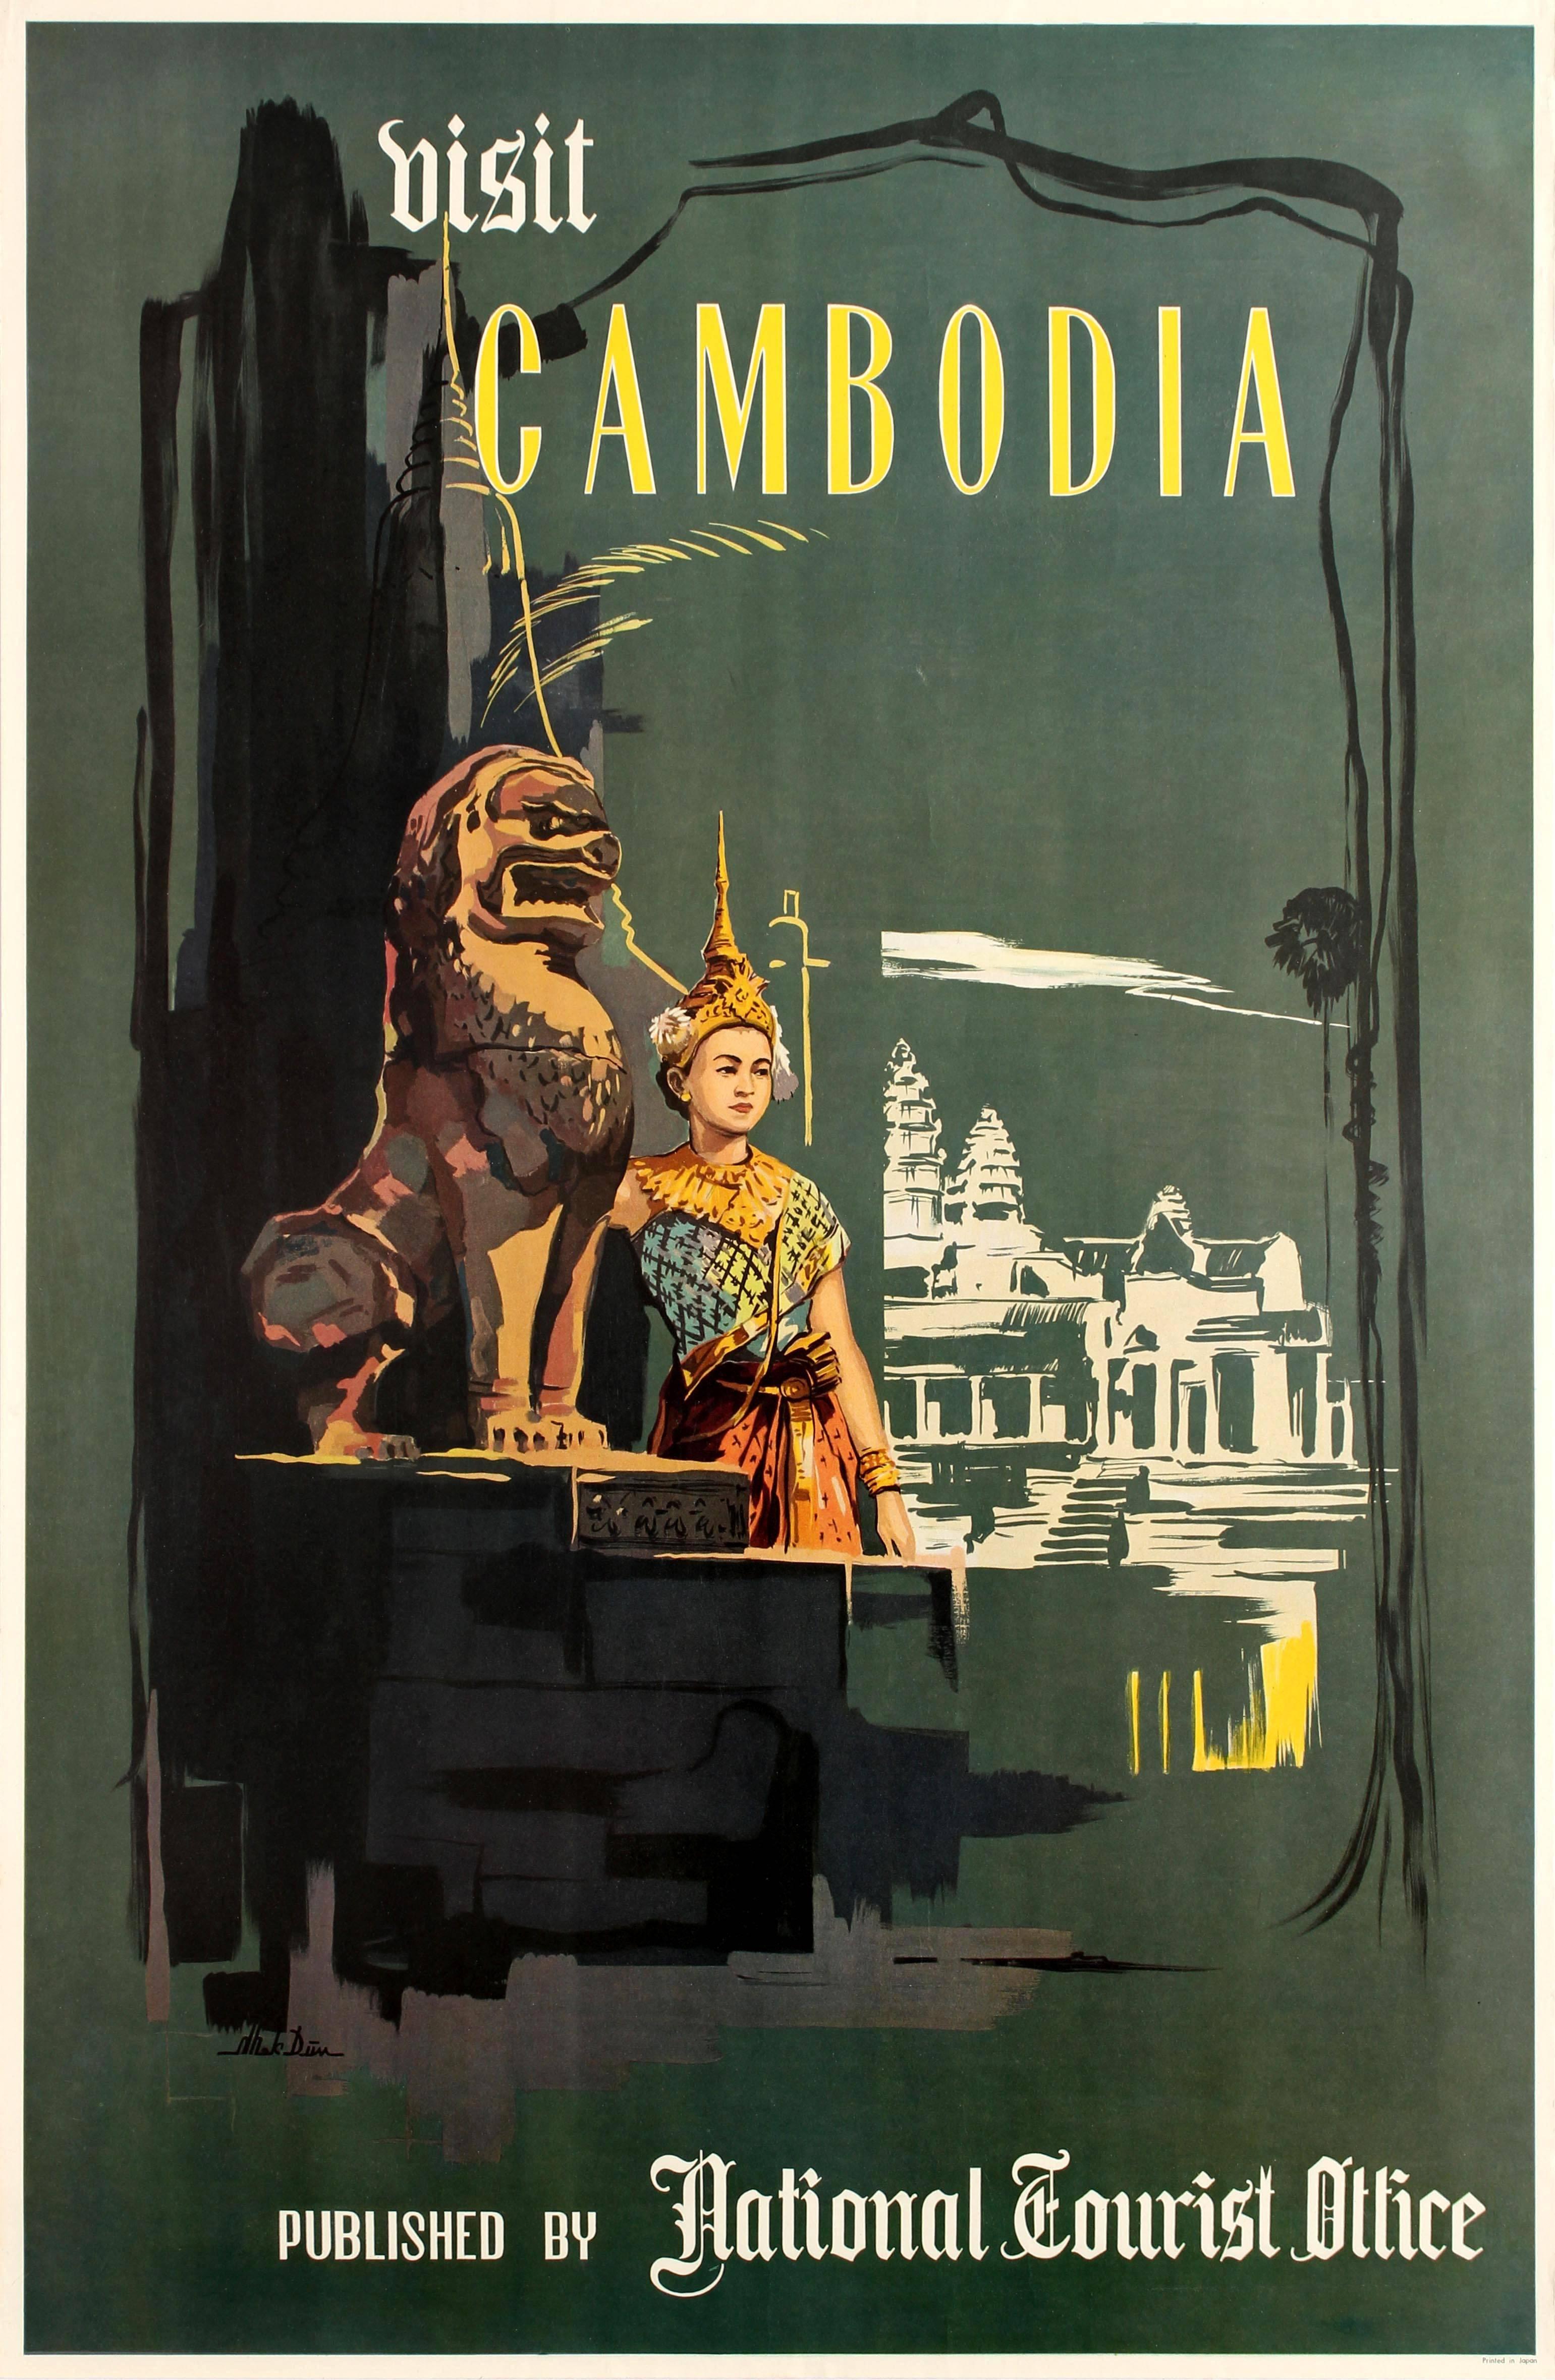 Mek Dim Print - Original Vintage Visit Cambodia Travel Poster - Angkor Wat - Natl Tourist Office